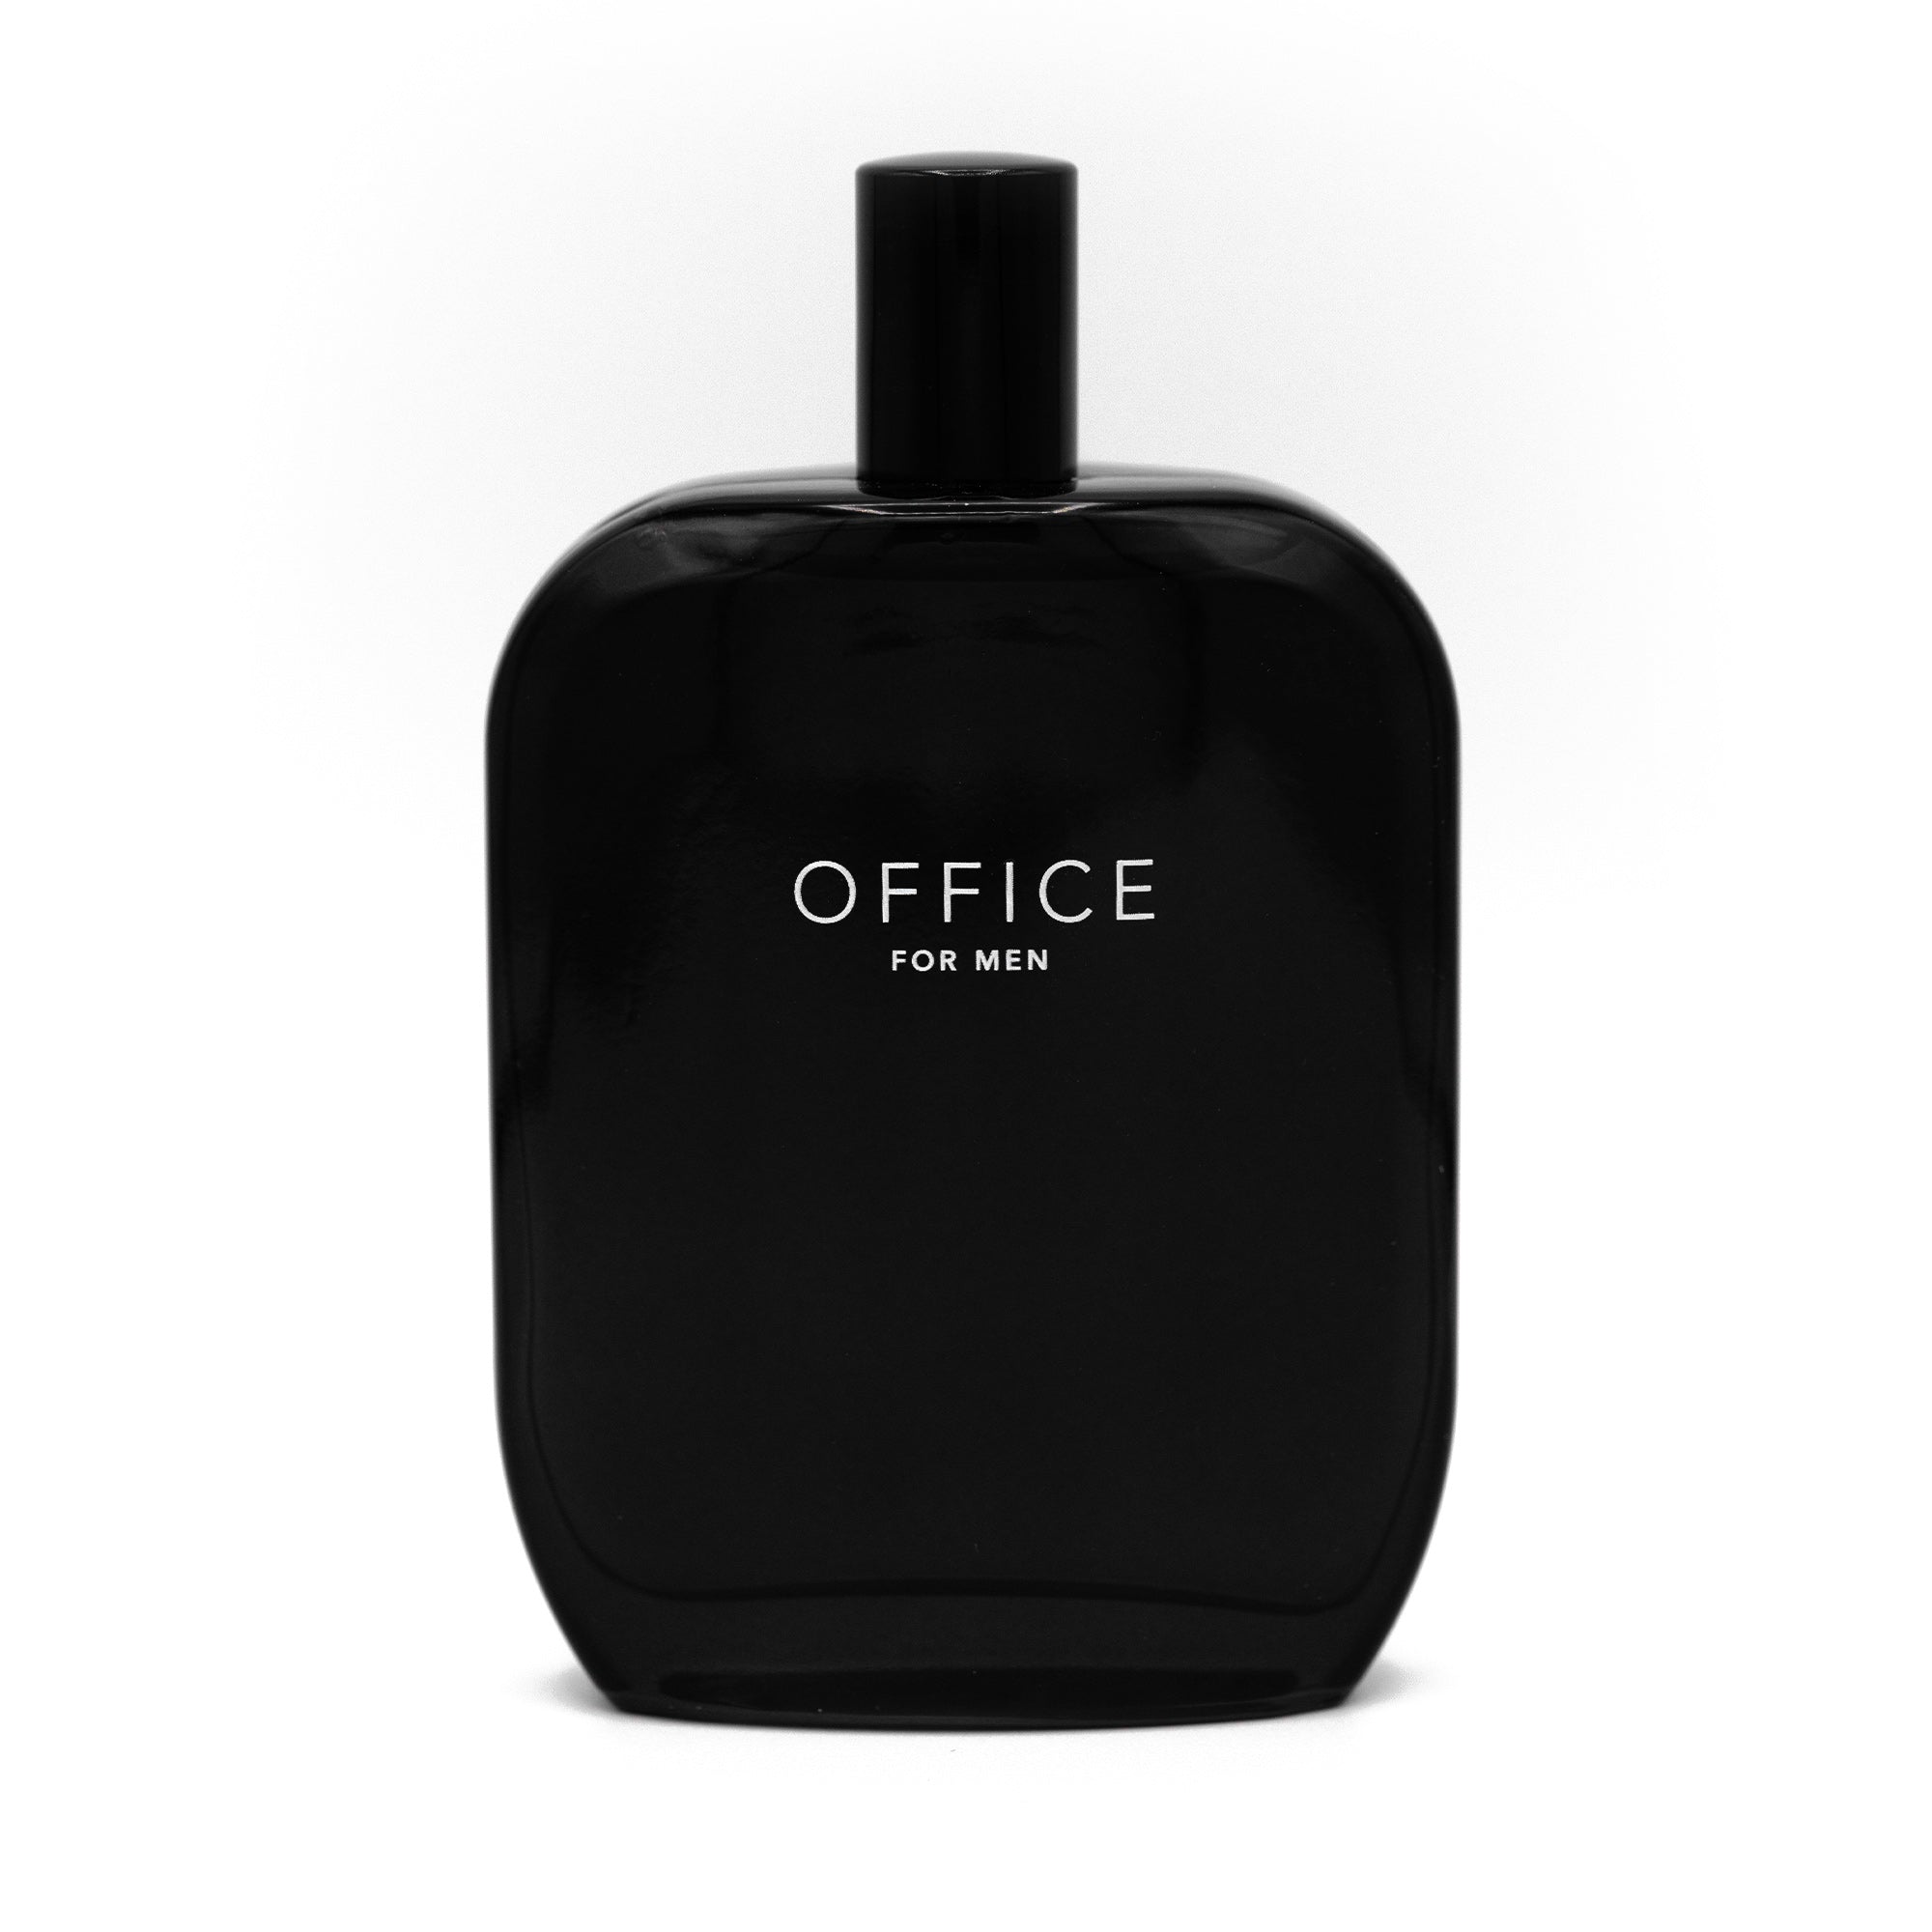 OFFICE for Men fragrance bottle 100ml closed cap